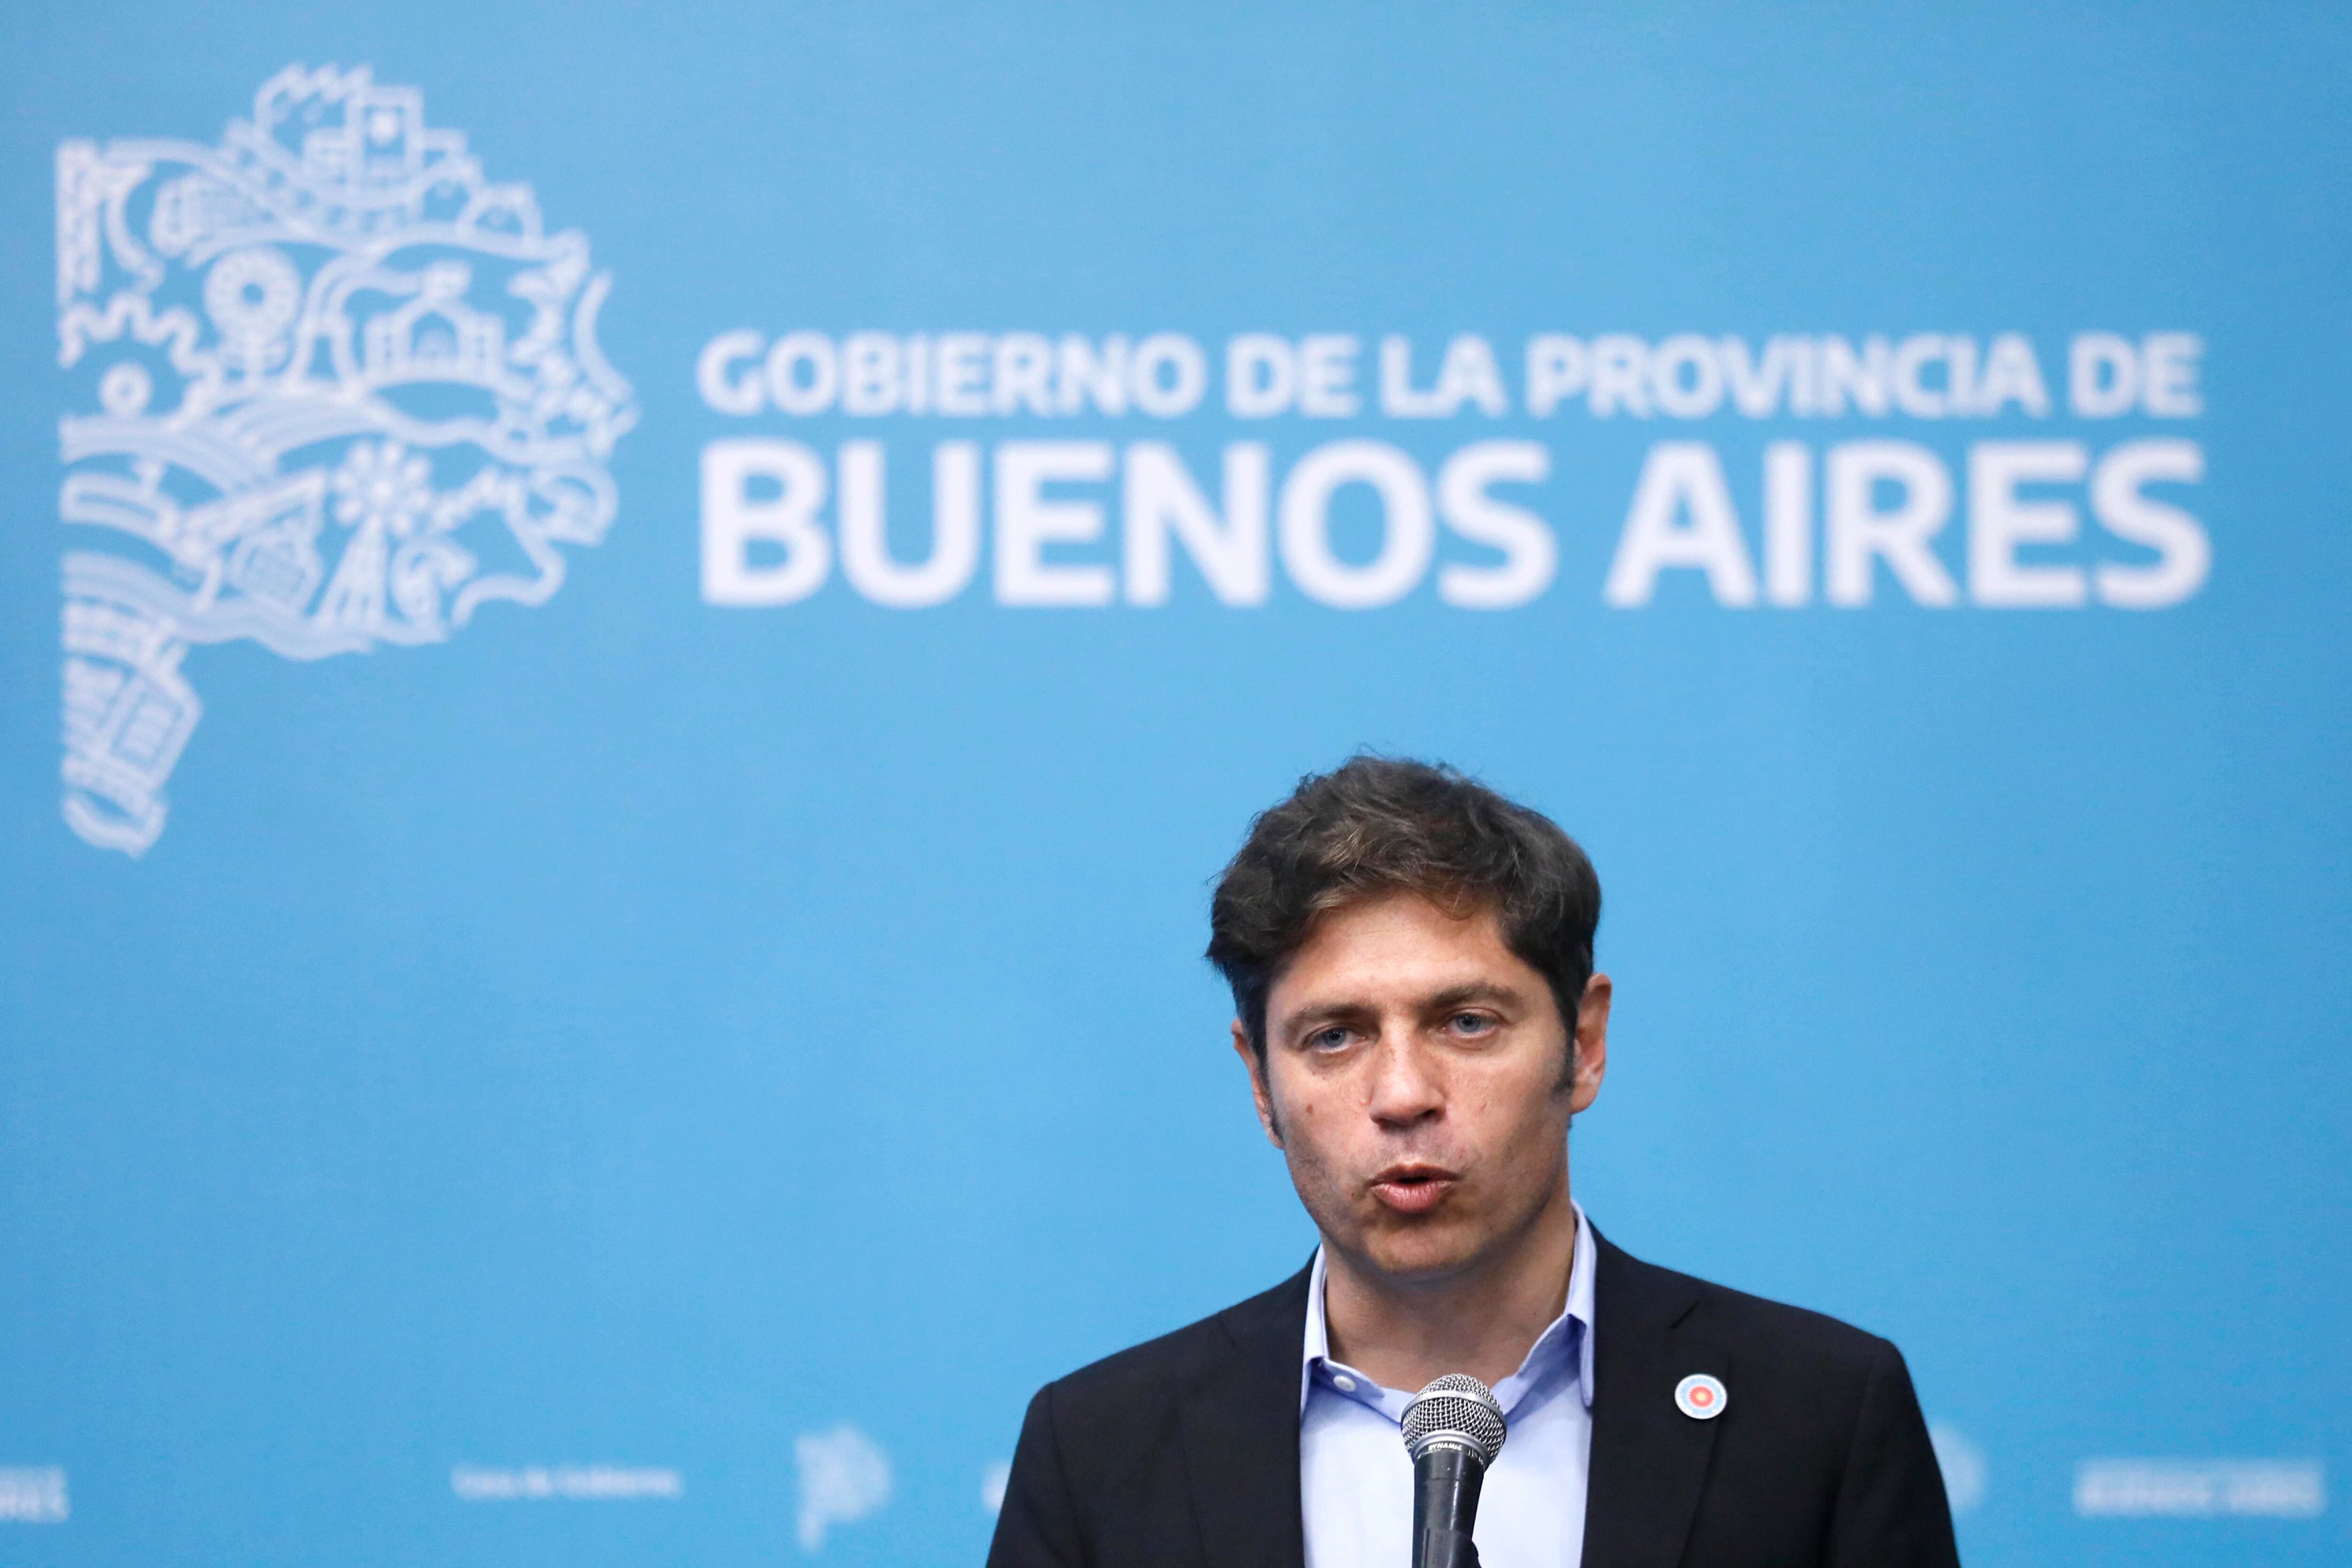 Foto de archivo del gobernador de Buenos Aires, Axel Kicillof. EFE/ Demian Alday Estévez
